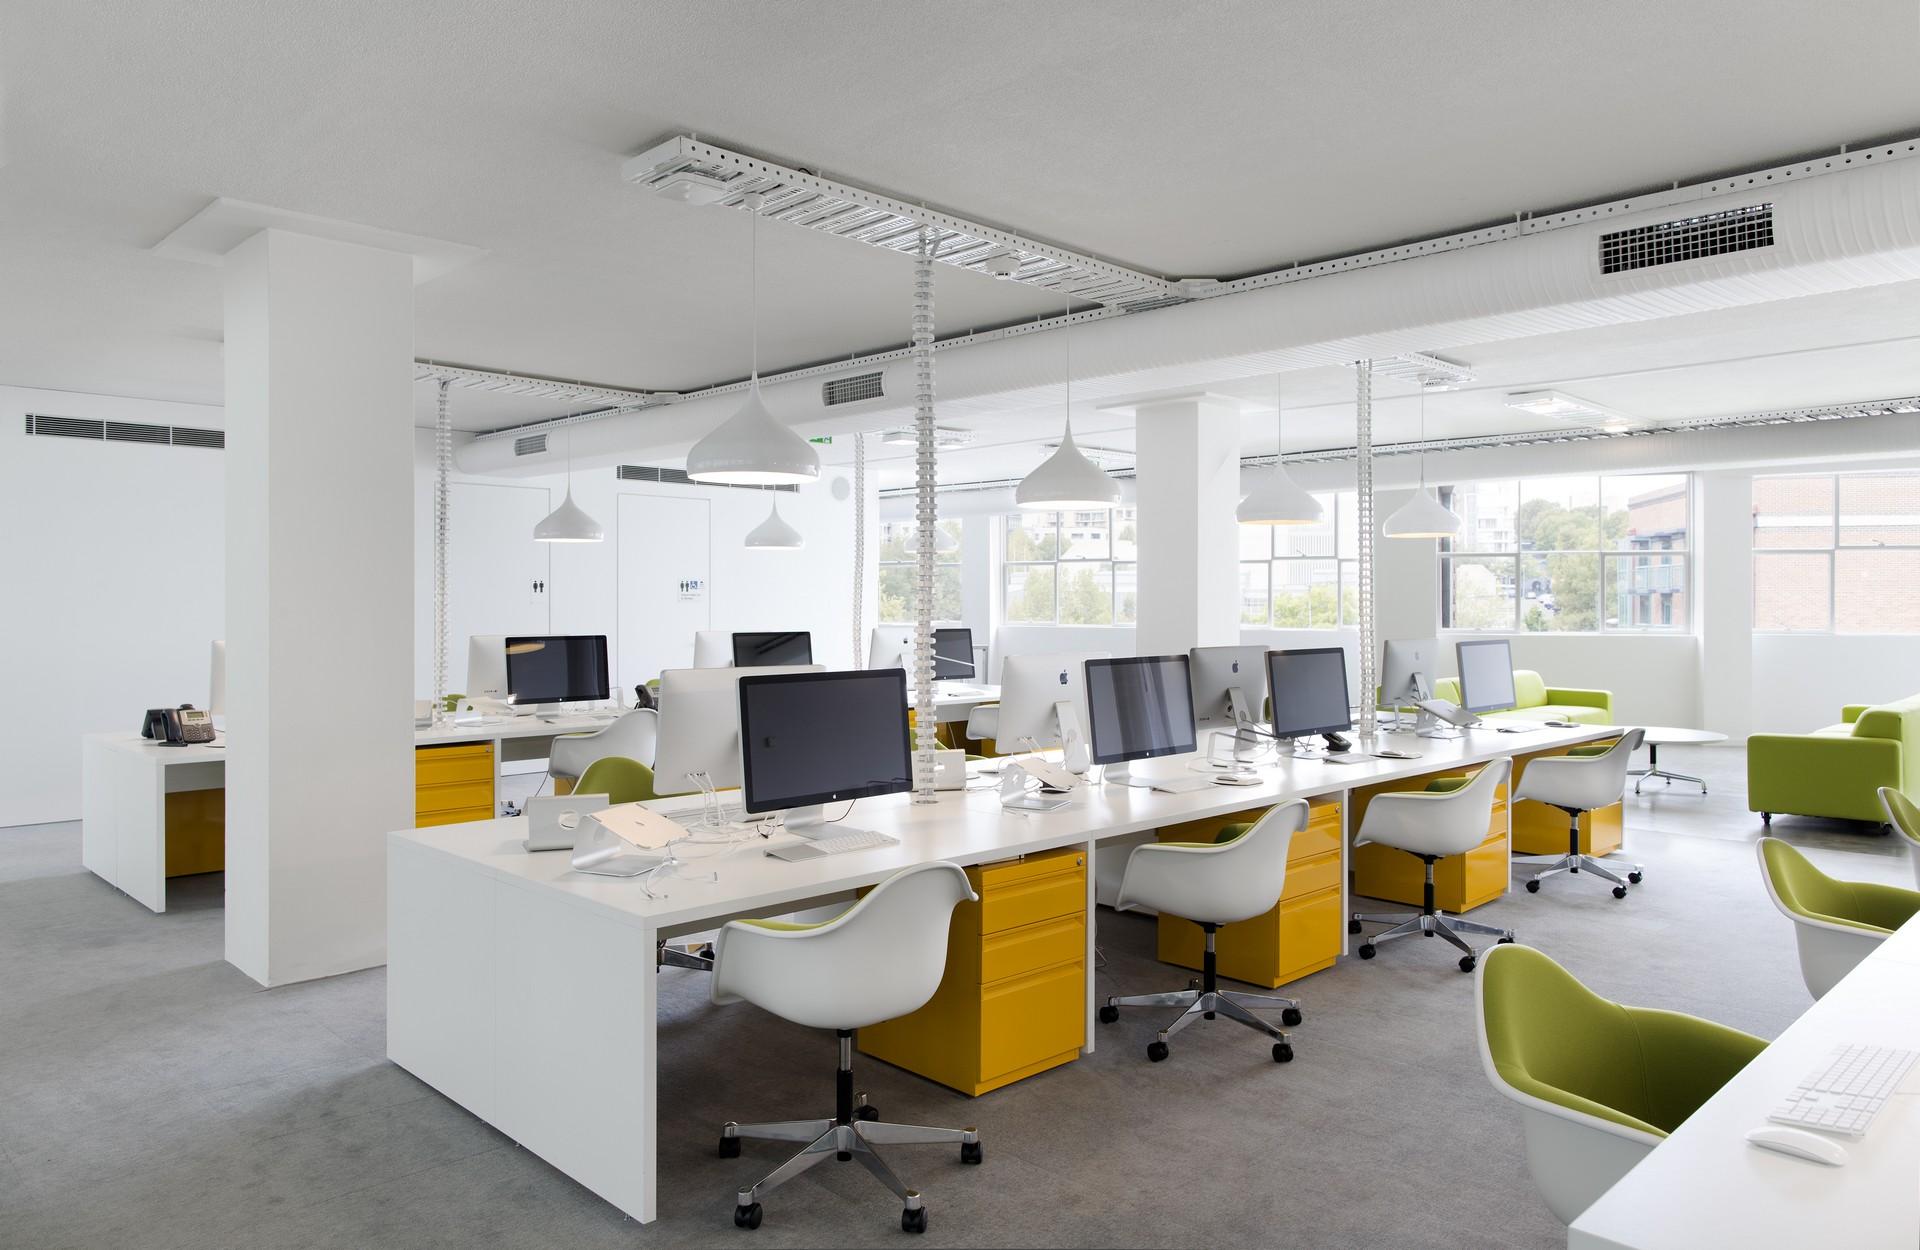 Không gian làm việc chuyên nghiệp với bàn ghế văn phòng sang trọng và tiện nghi. Đảm bảo sức khỏe và sự thoải mái cho nhân viên làm việc.